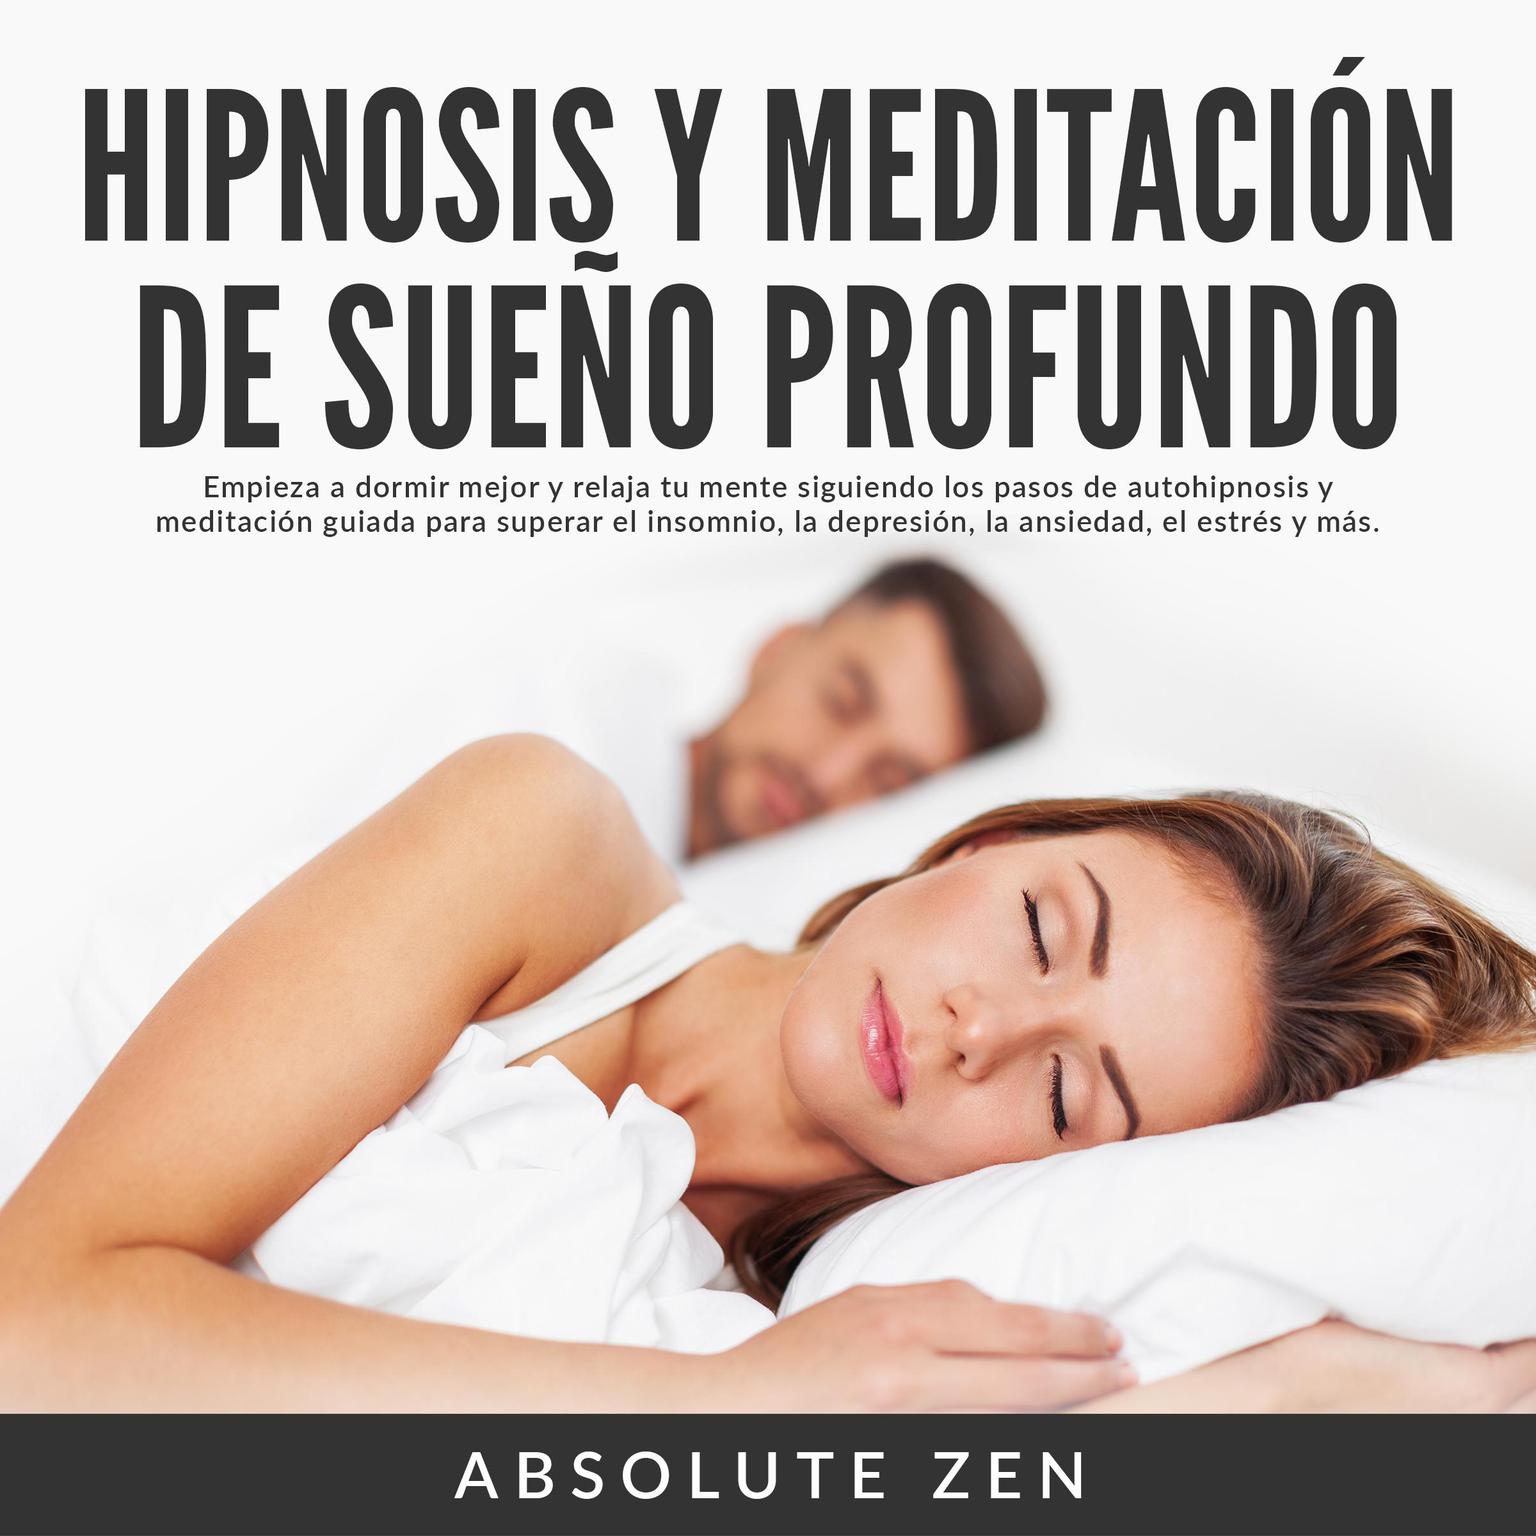 Hipnosis y Meditación de Sueño Profundo: Empieza a dormir mejor y relaja tu mente siguiendo los pasos de autohipnosis y meditación guiada para superar el insomnio, la depresión, la ansiedad, el estrés y más. (Abridged) Audiobook, by Absolute Zen